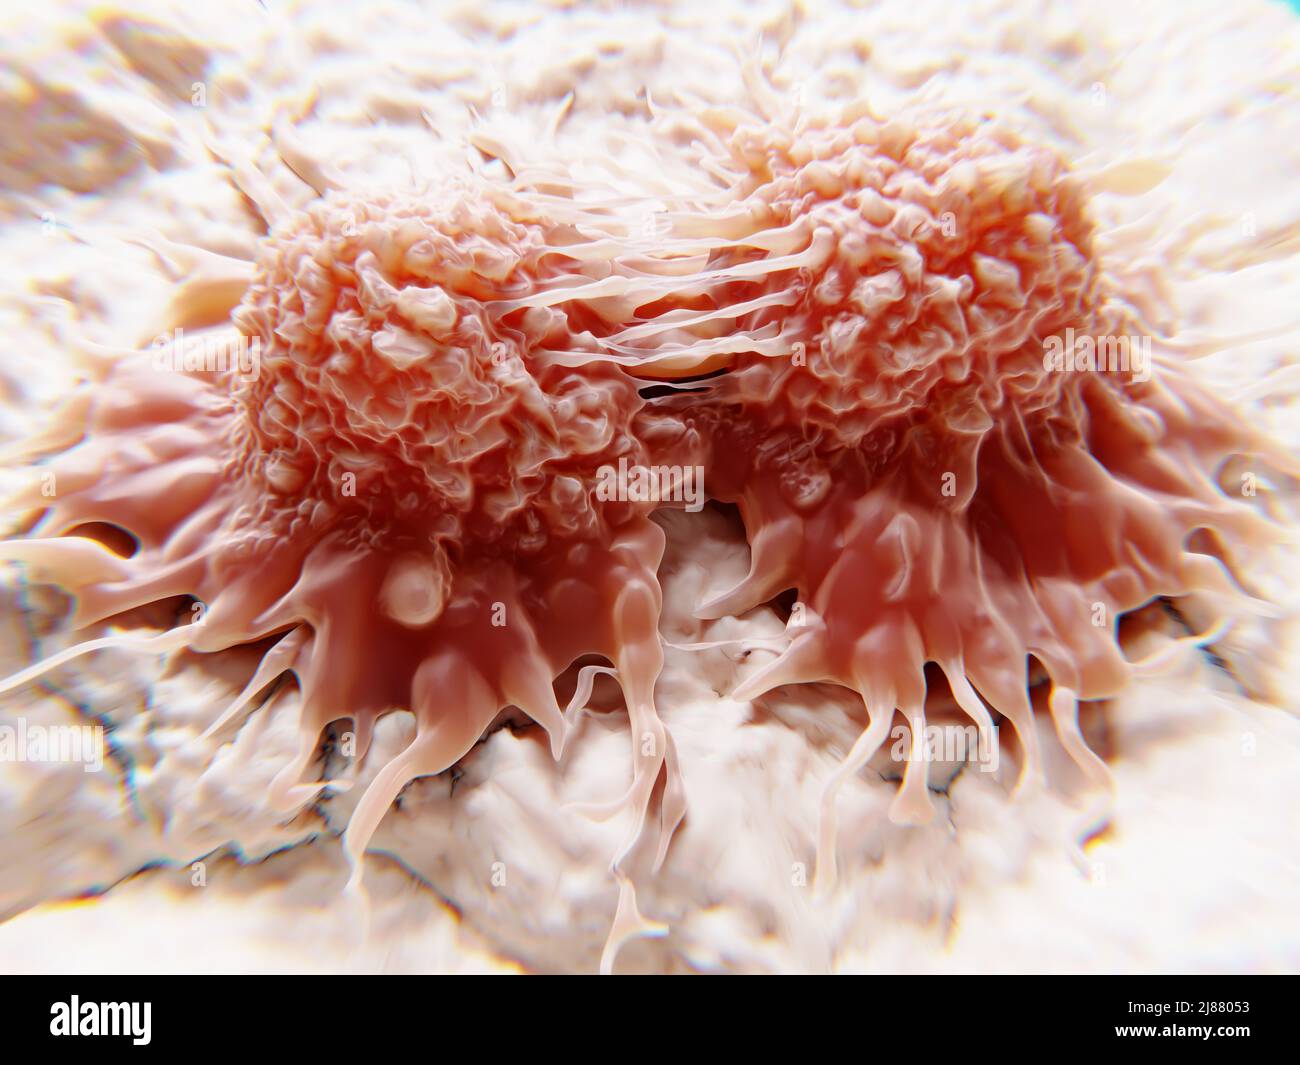 Divisione delle cellule tumorali, illustrazione Foto Stock